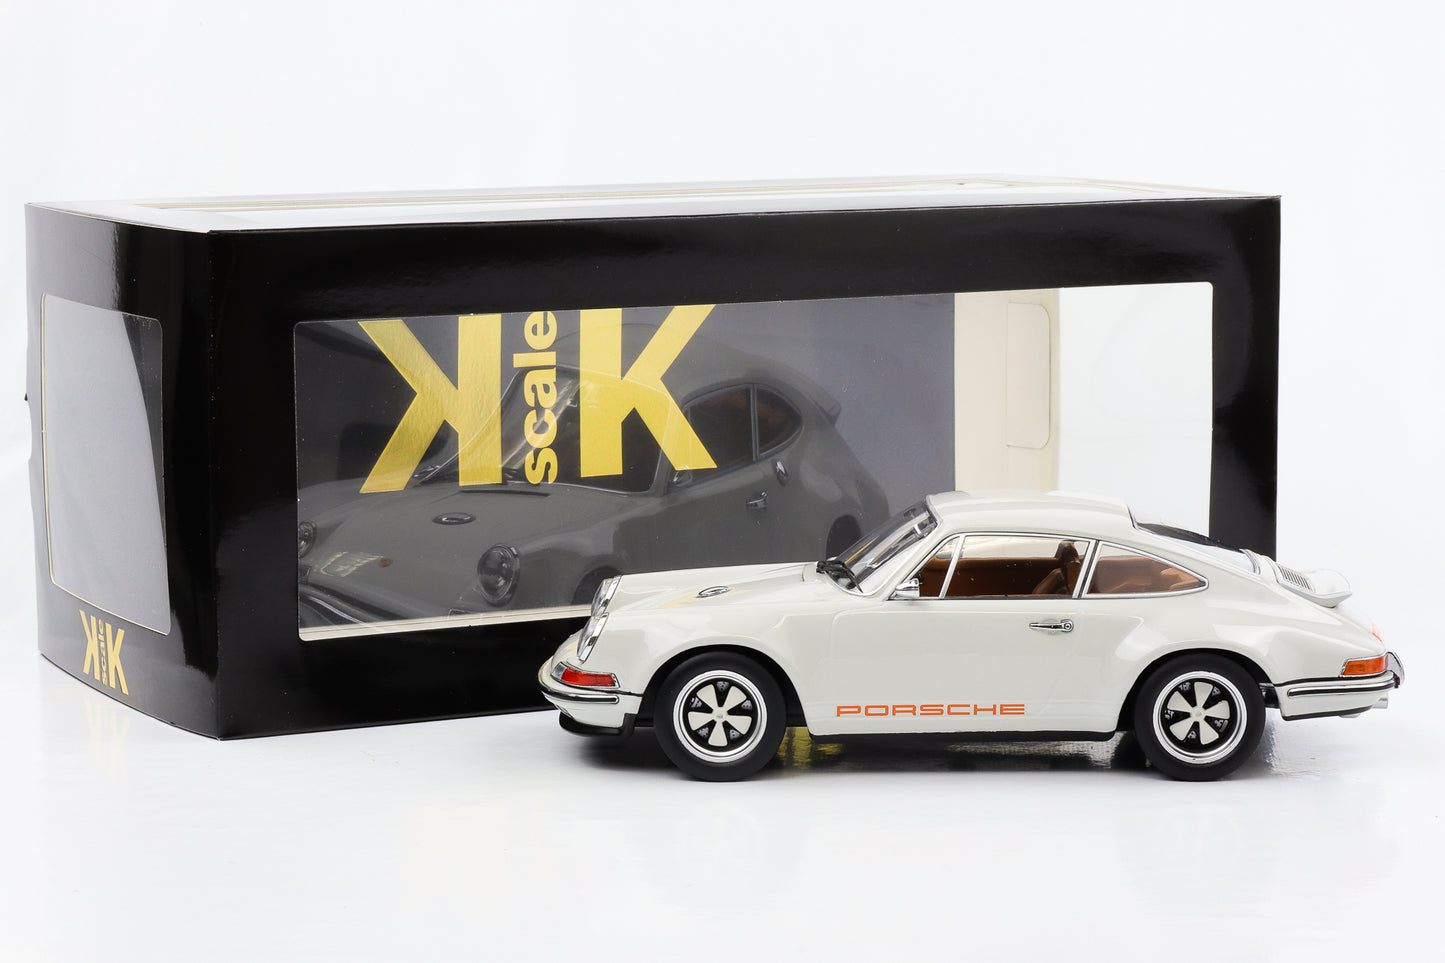 1:18 Porsche Singer 911 Coupé gris escala KK fundido a presión